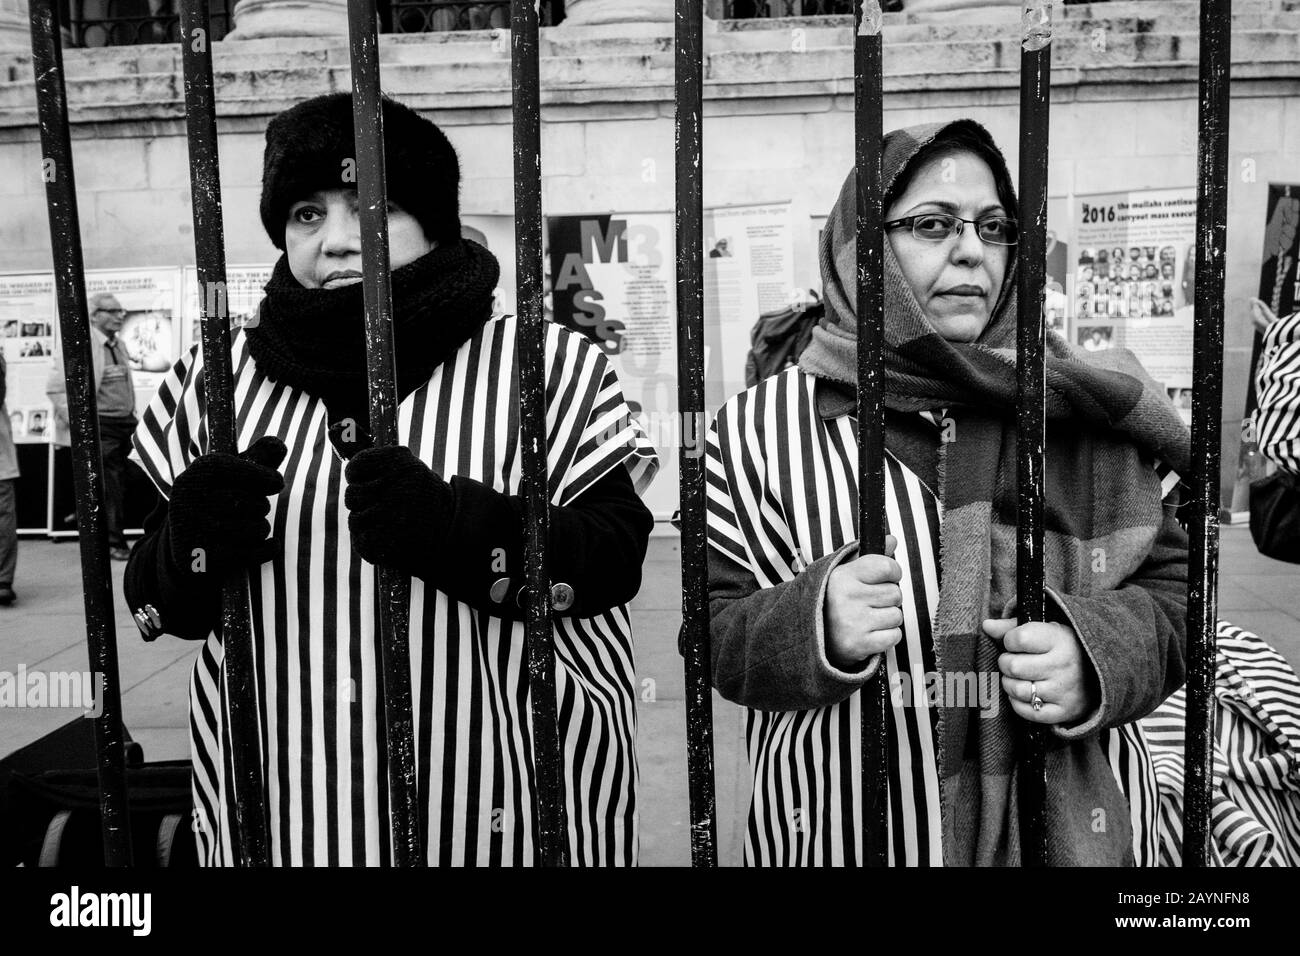 Fotografia di strada bianca e nera a Londra: I dimostranti iraniani protestano contro la detenzione e l'assassinio di prigionieri politici da parte delle autorità iraniane. Foto Stock